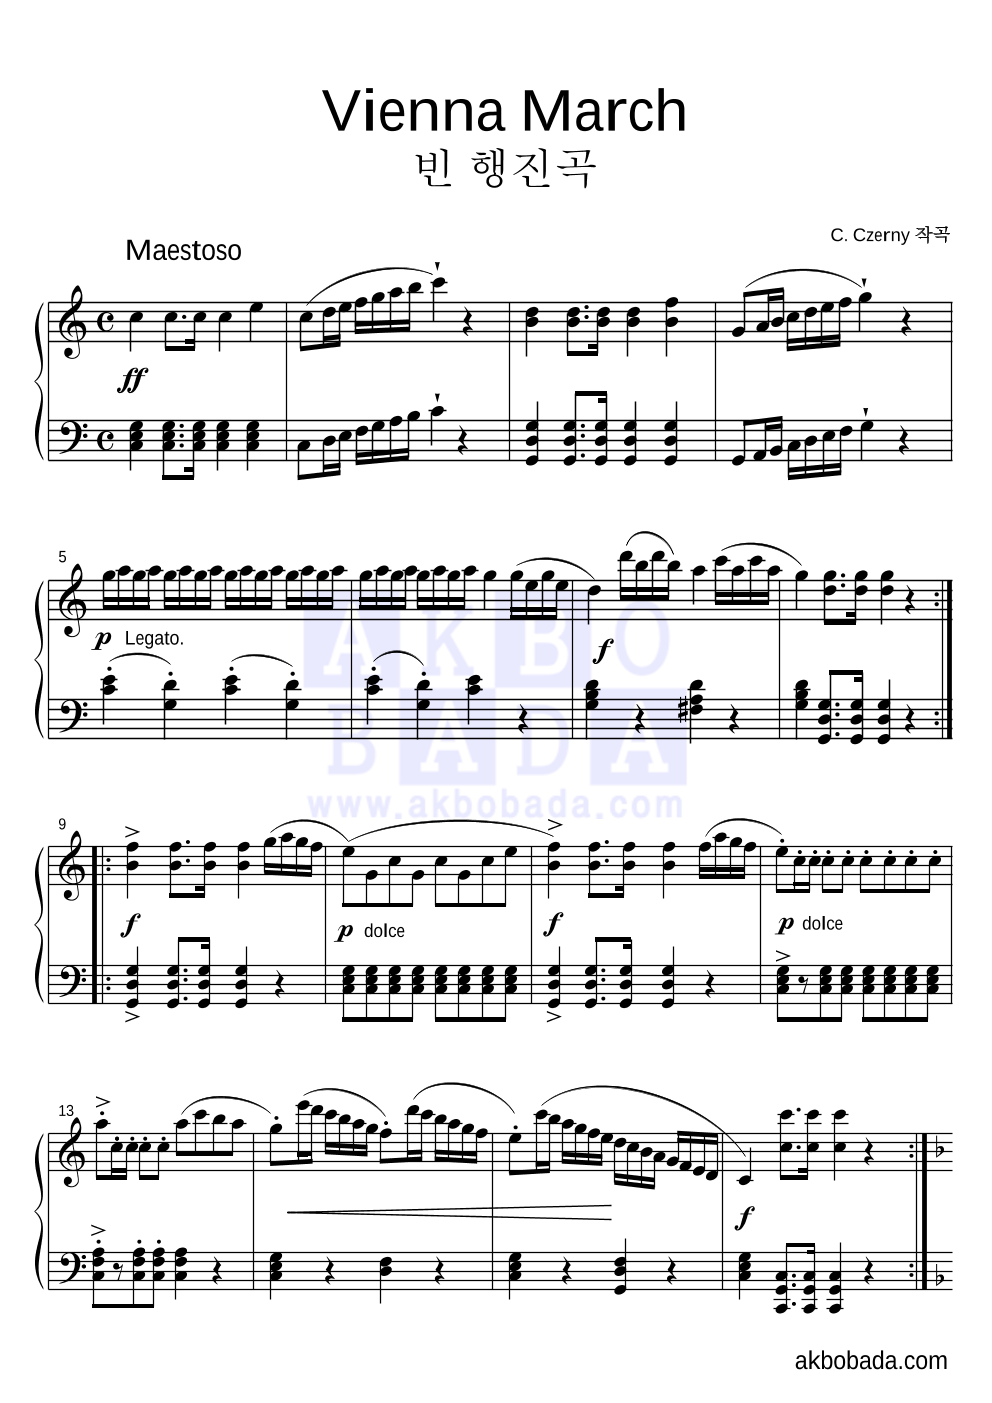 체르니 - 빈 행진곡 (Vienna March) 피아노 2단 악보 